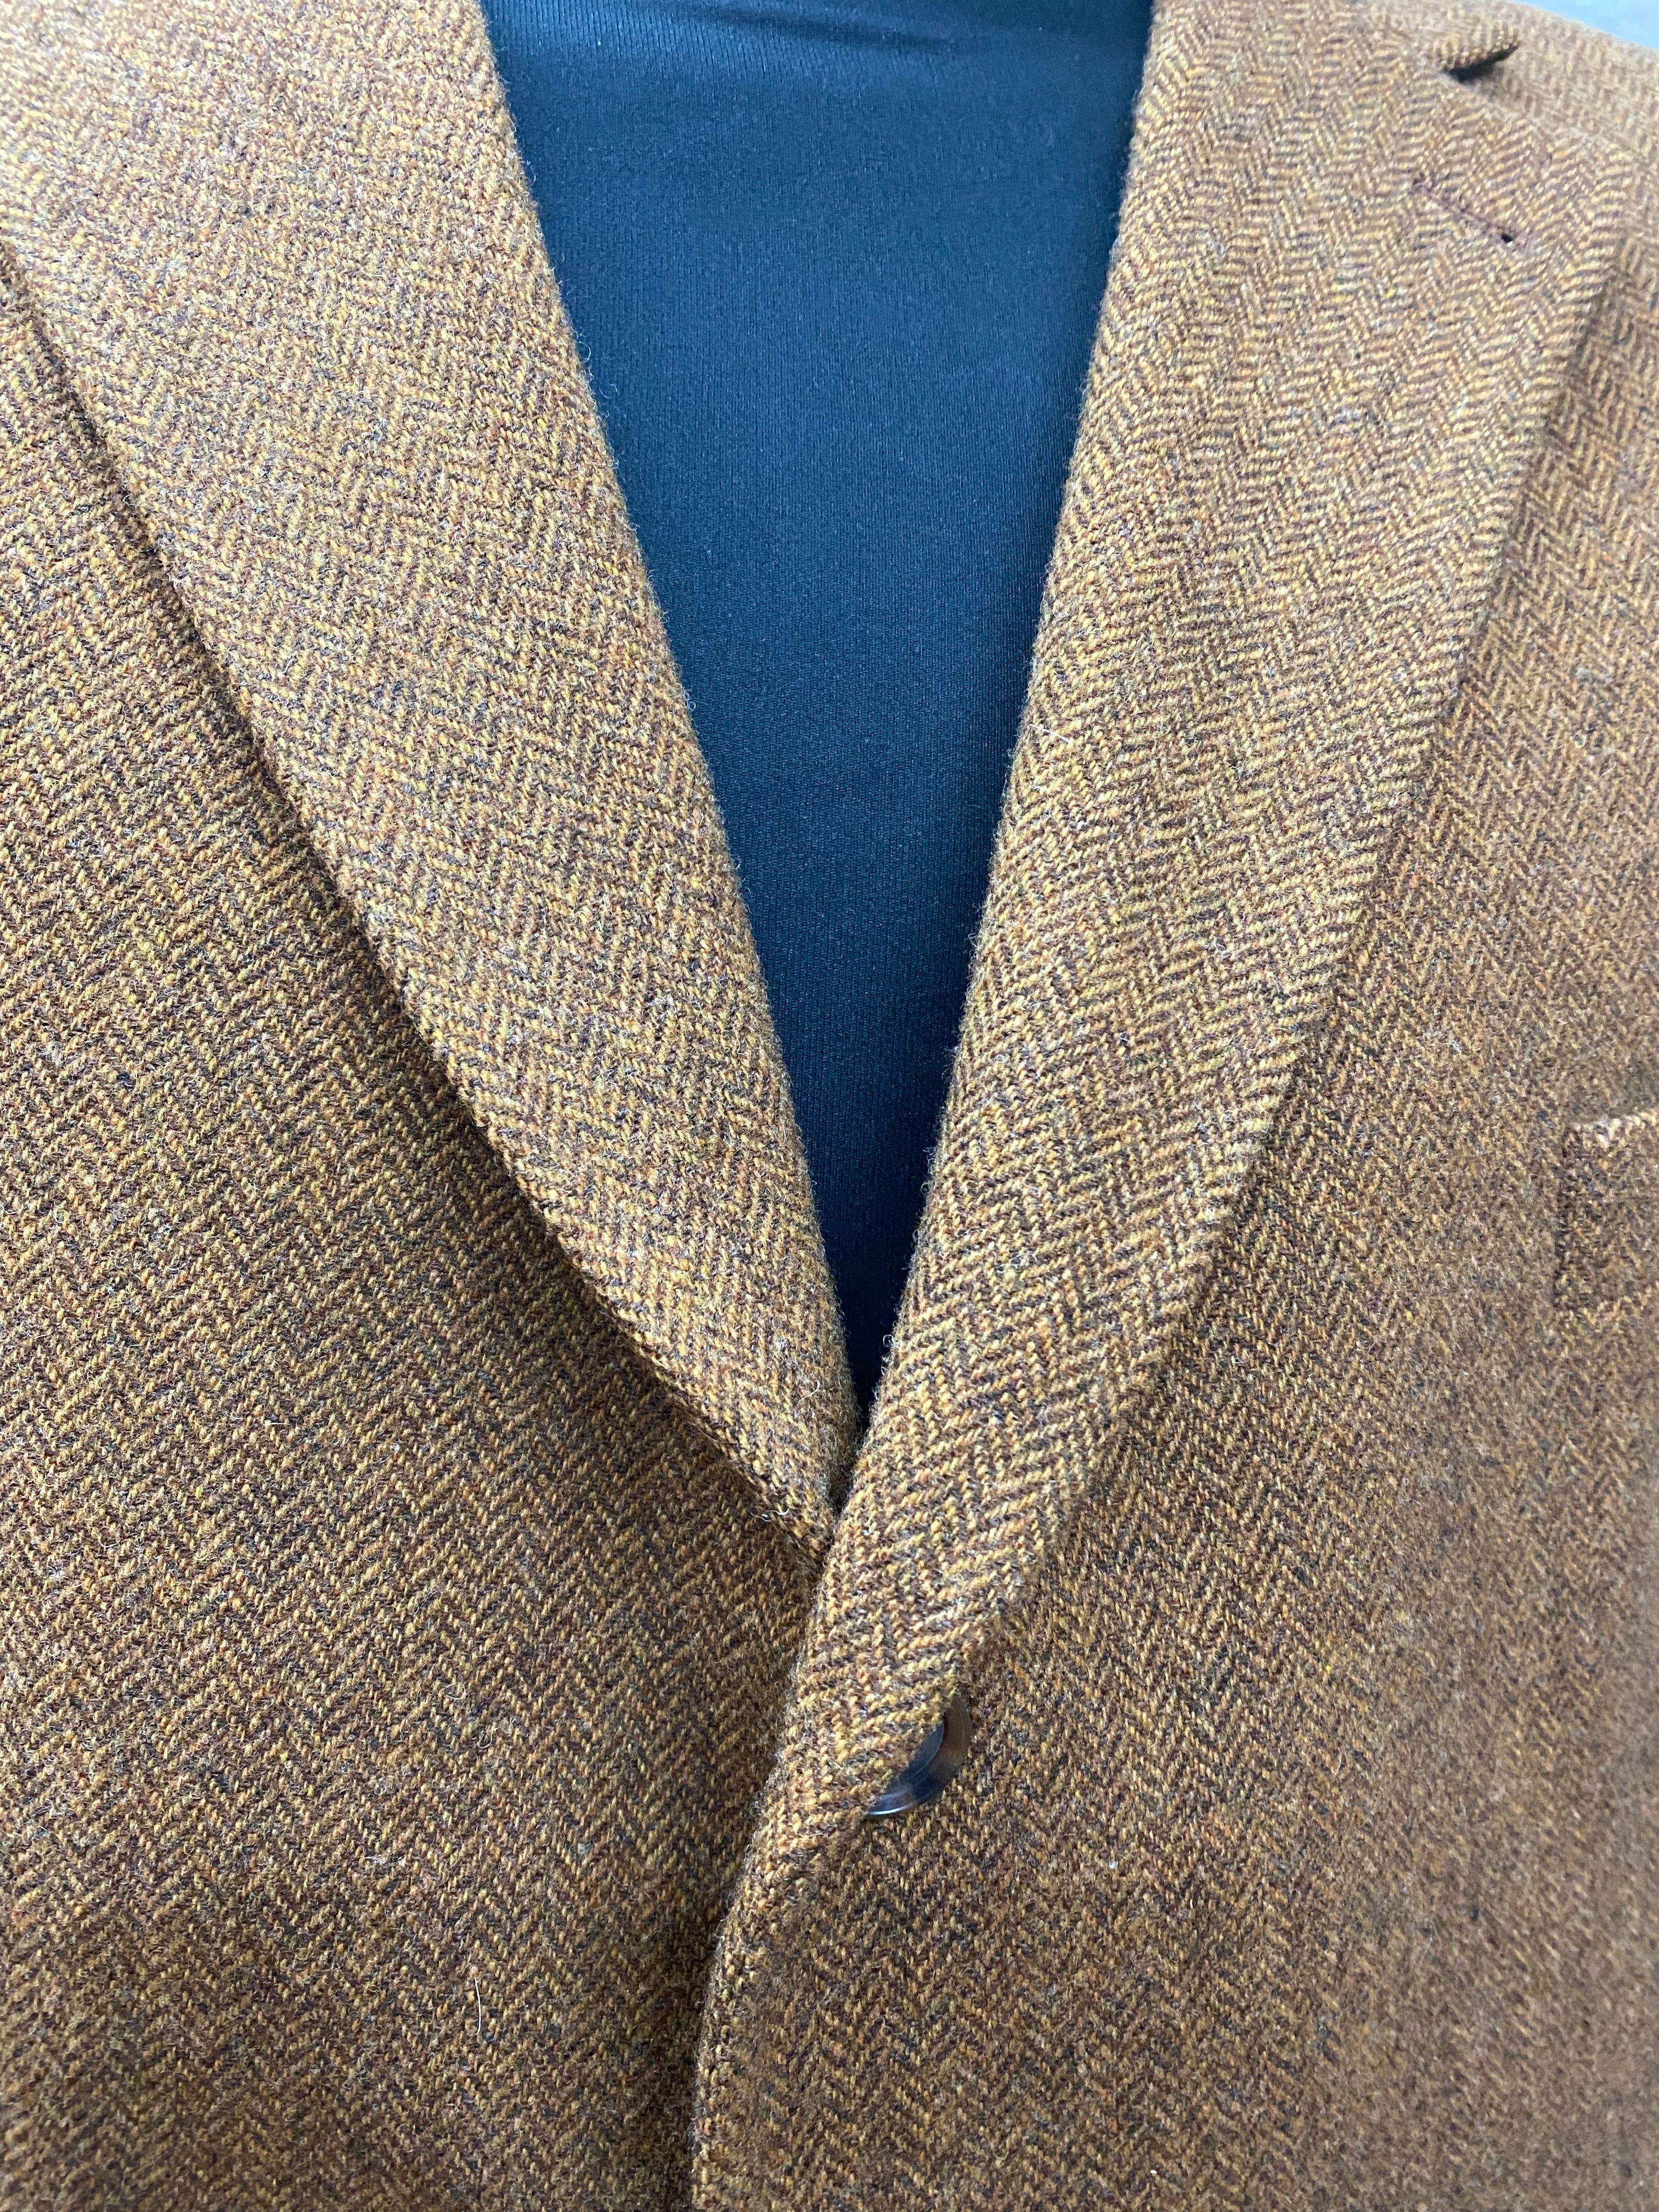 Tweed Jacke Gr.31 Herren, Vintage